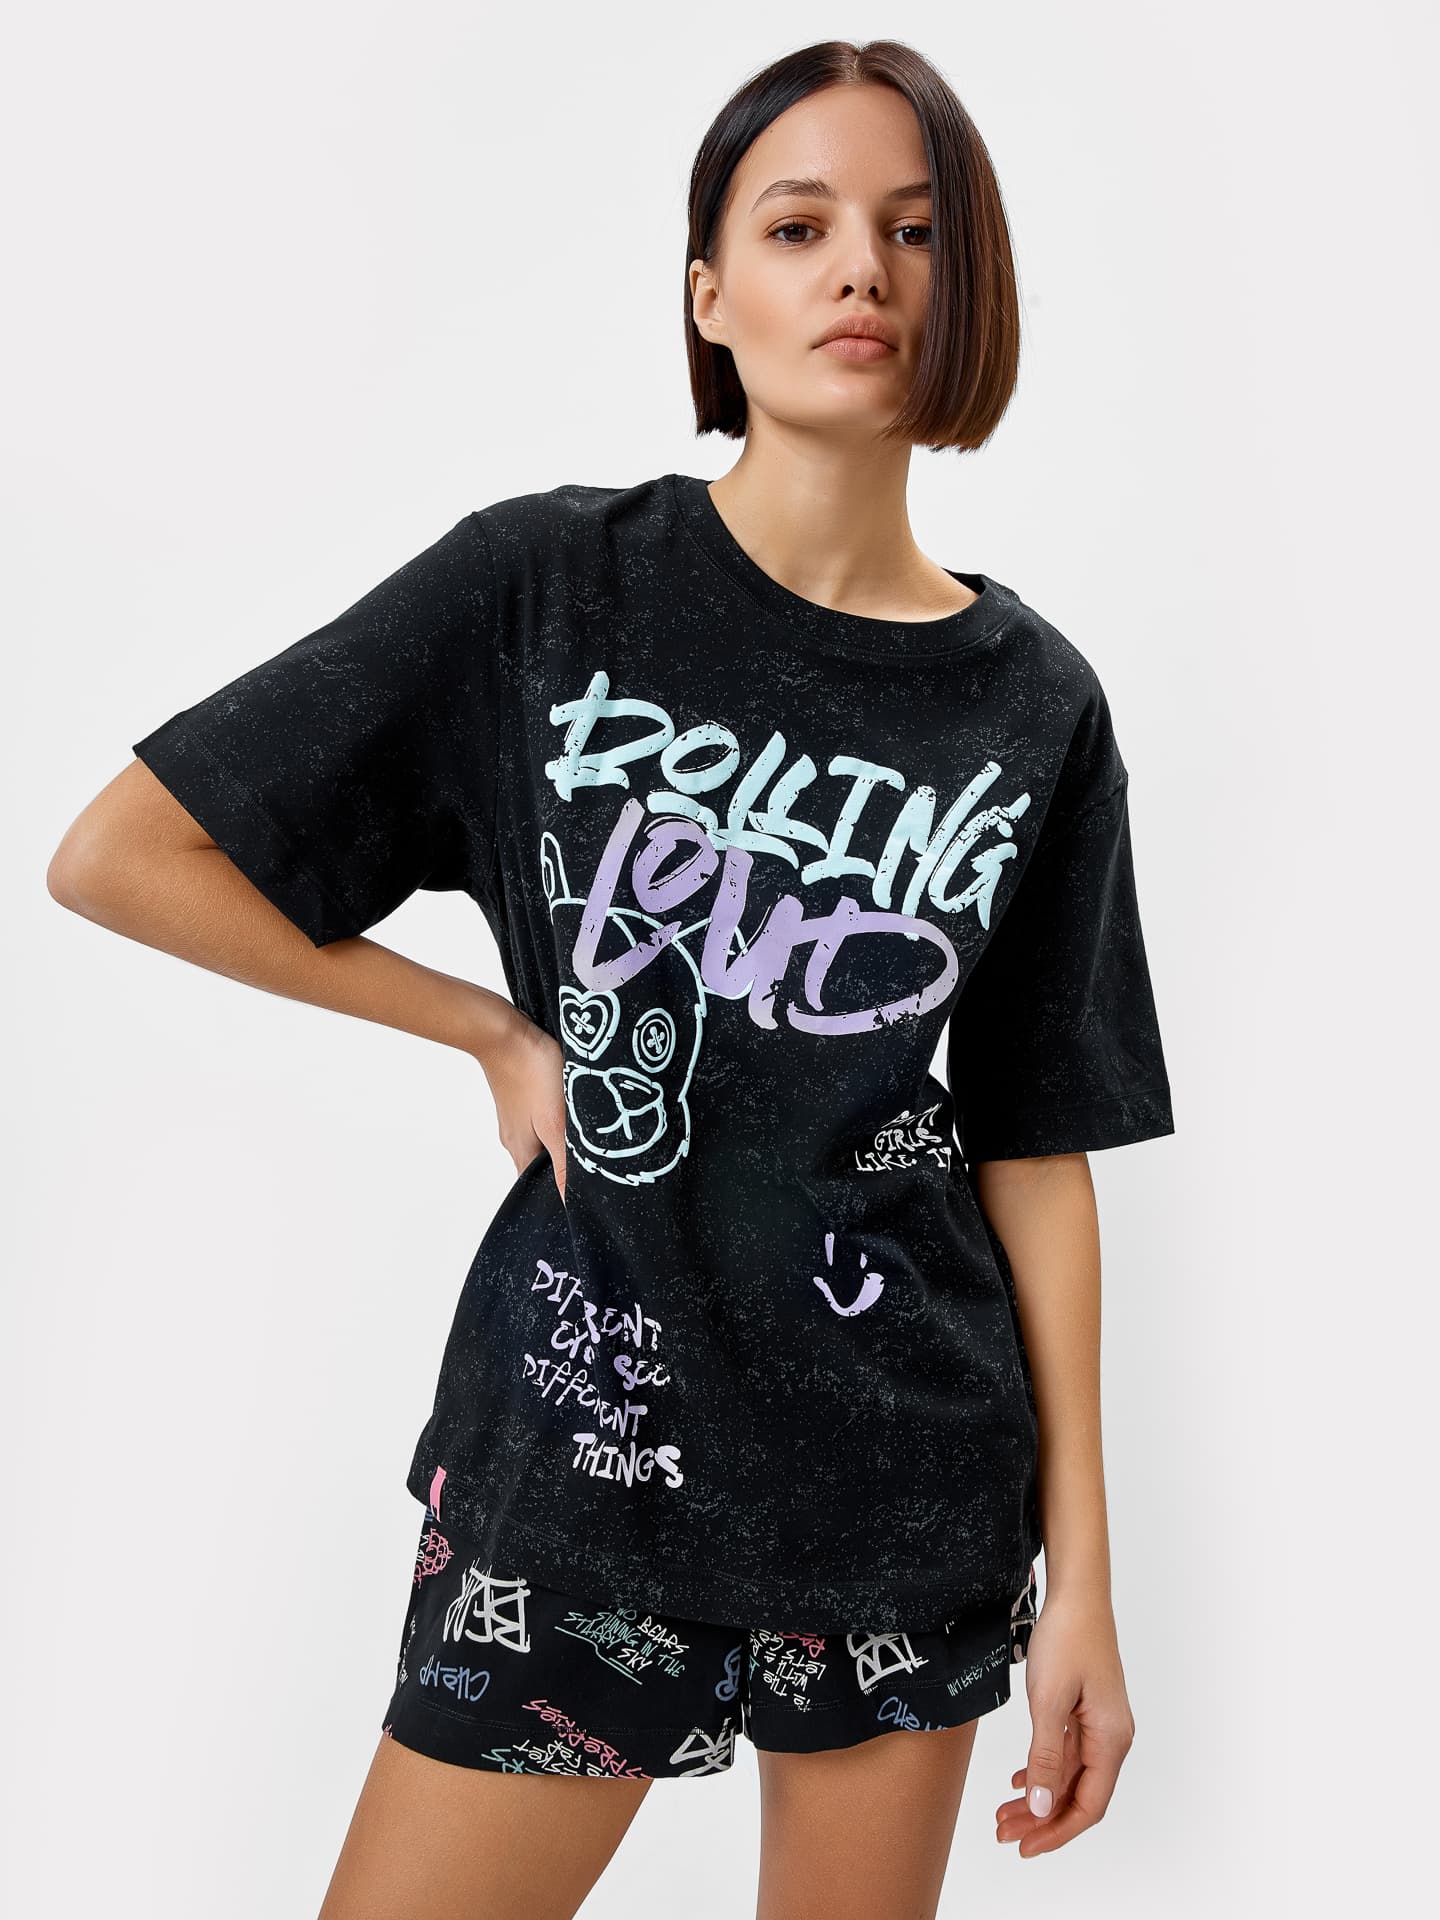 Комплект женский (футболка, шорты) в черном цвете с граффити